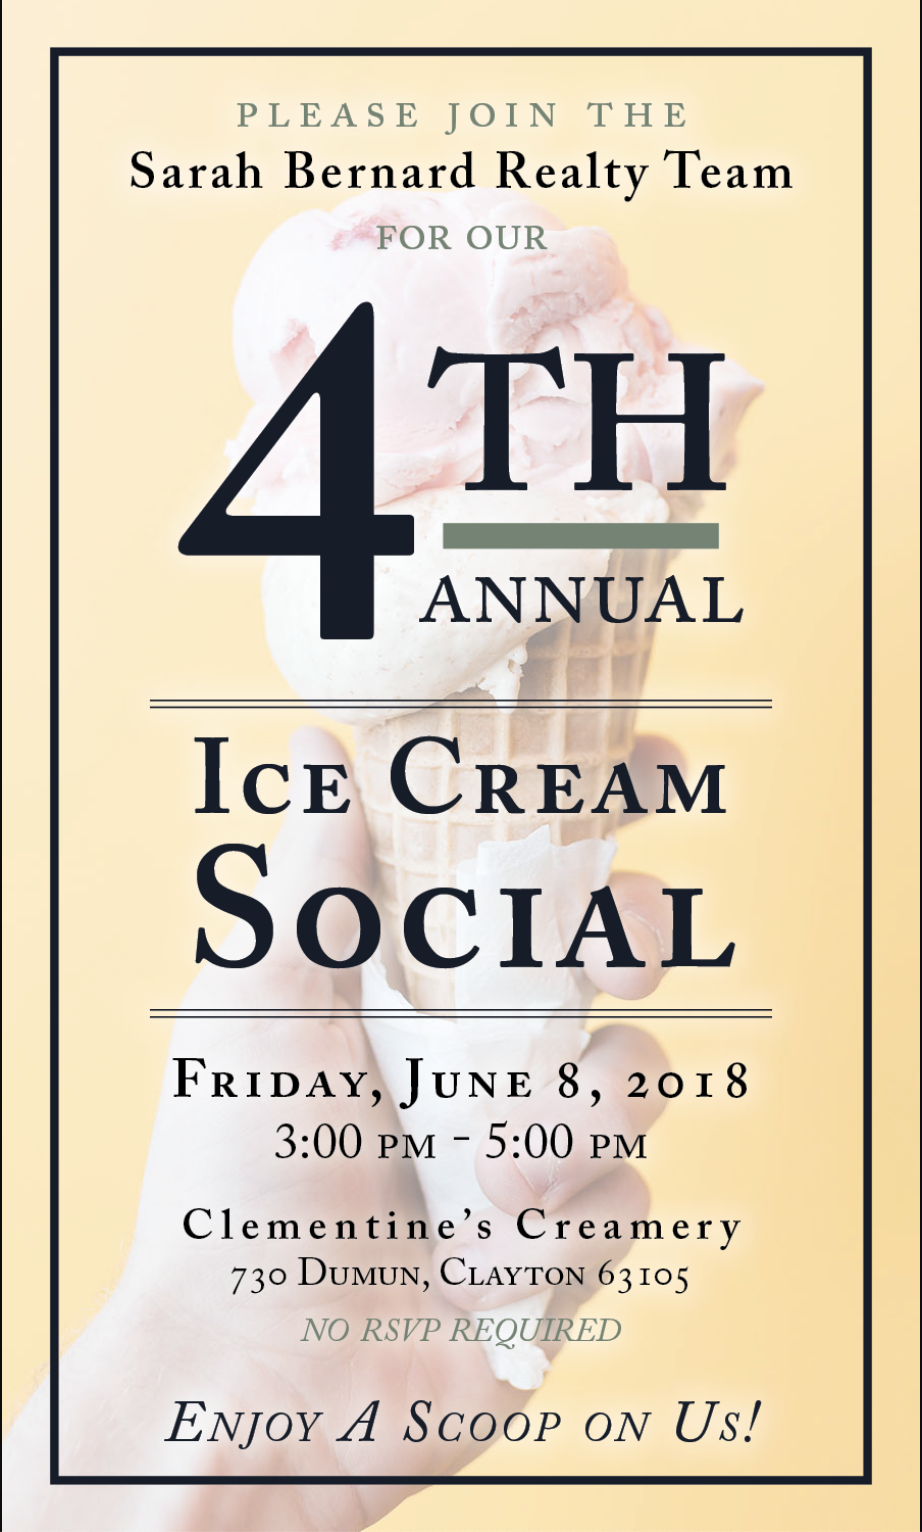 Sarah Bernard Realty Team’s 4th Annual Ice Cream Social